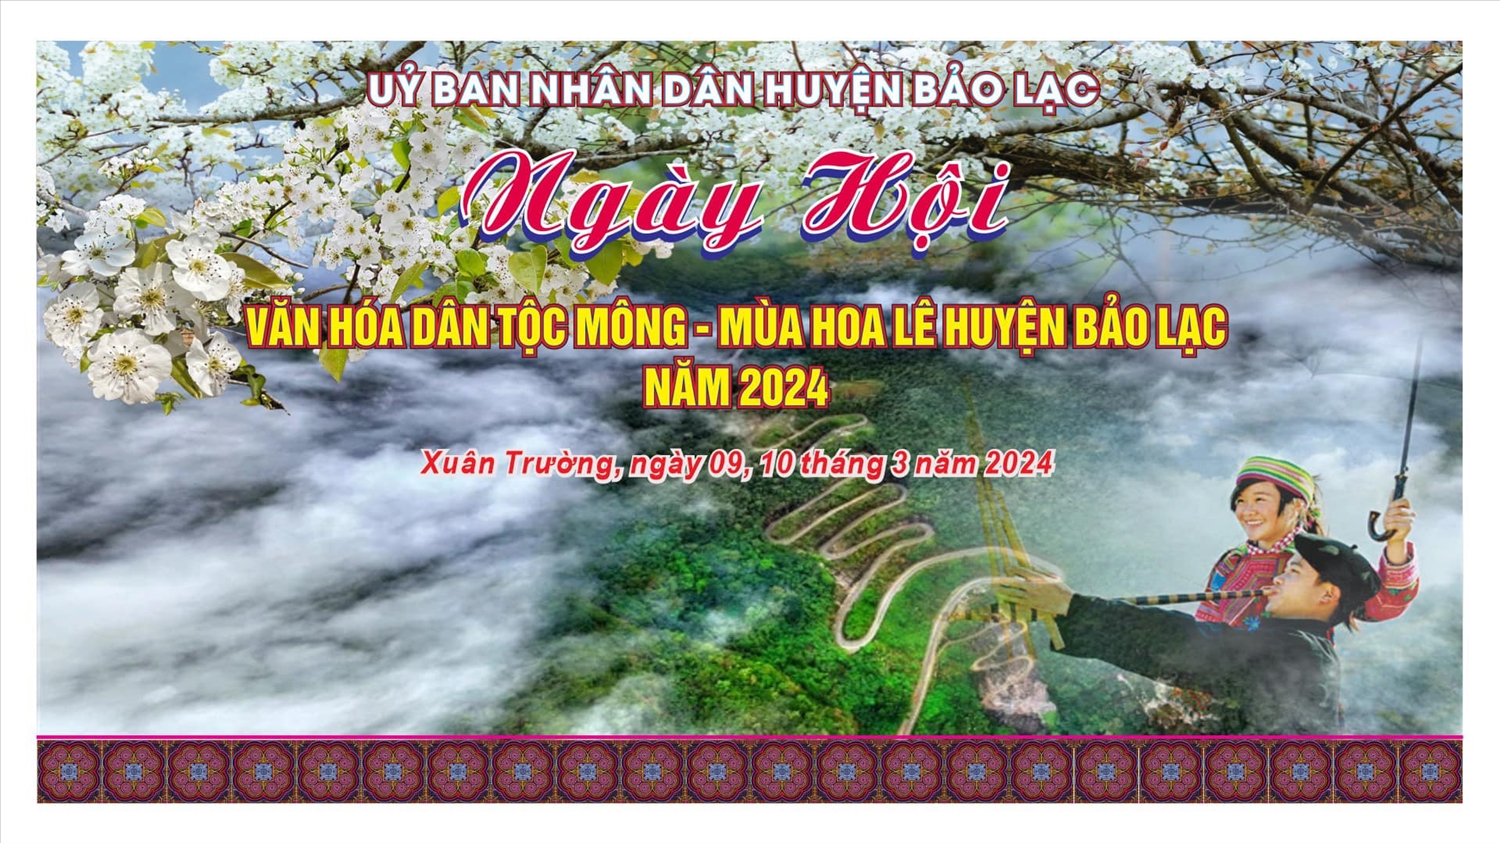 Ngày hội văn hóa dân tộc Mông trong 2 ngày, từ mùng 9 - 10/3/2024 tại trung tâm xã Xuân Trường, huyện Bảo Lạc, tỉnh Cao Bằng